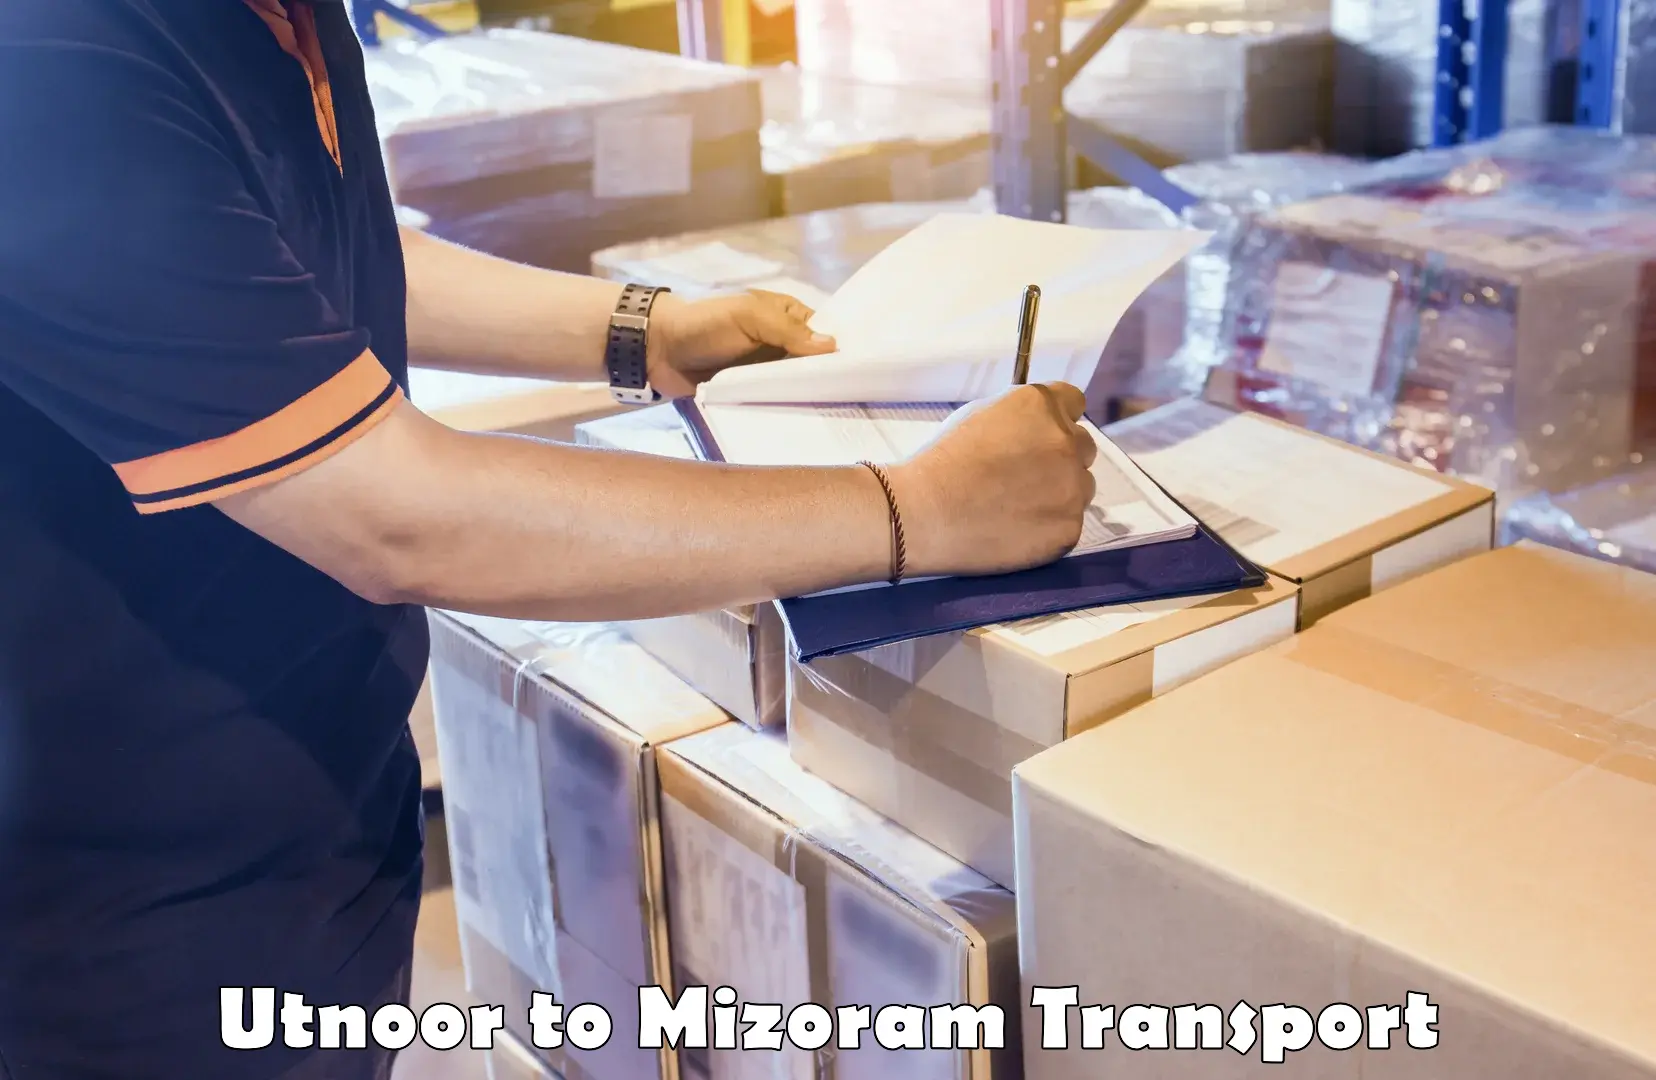 Furniture transport service Utnoor to Mizoram